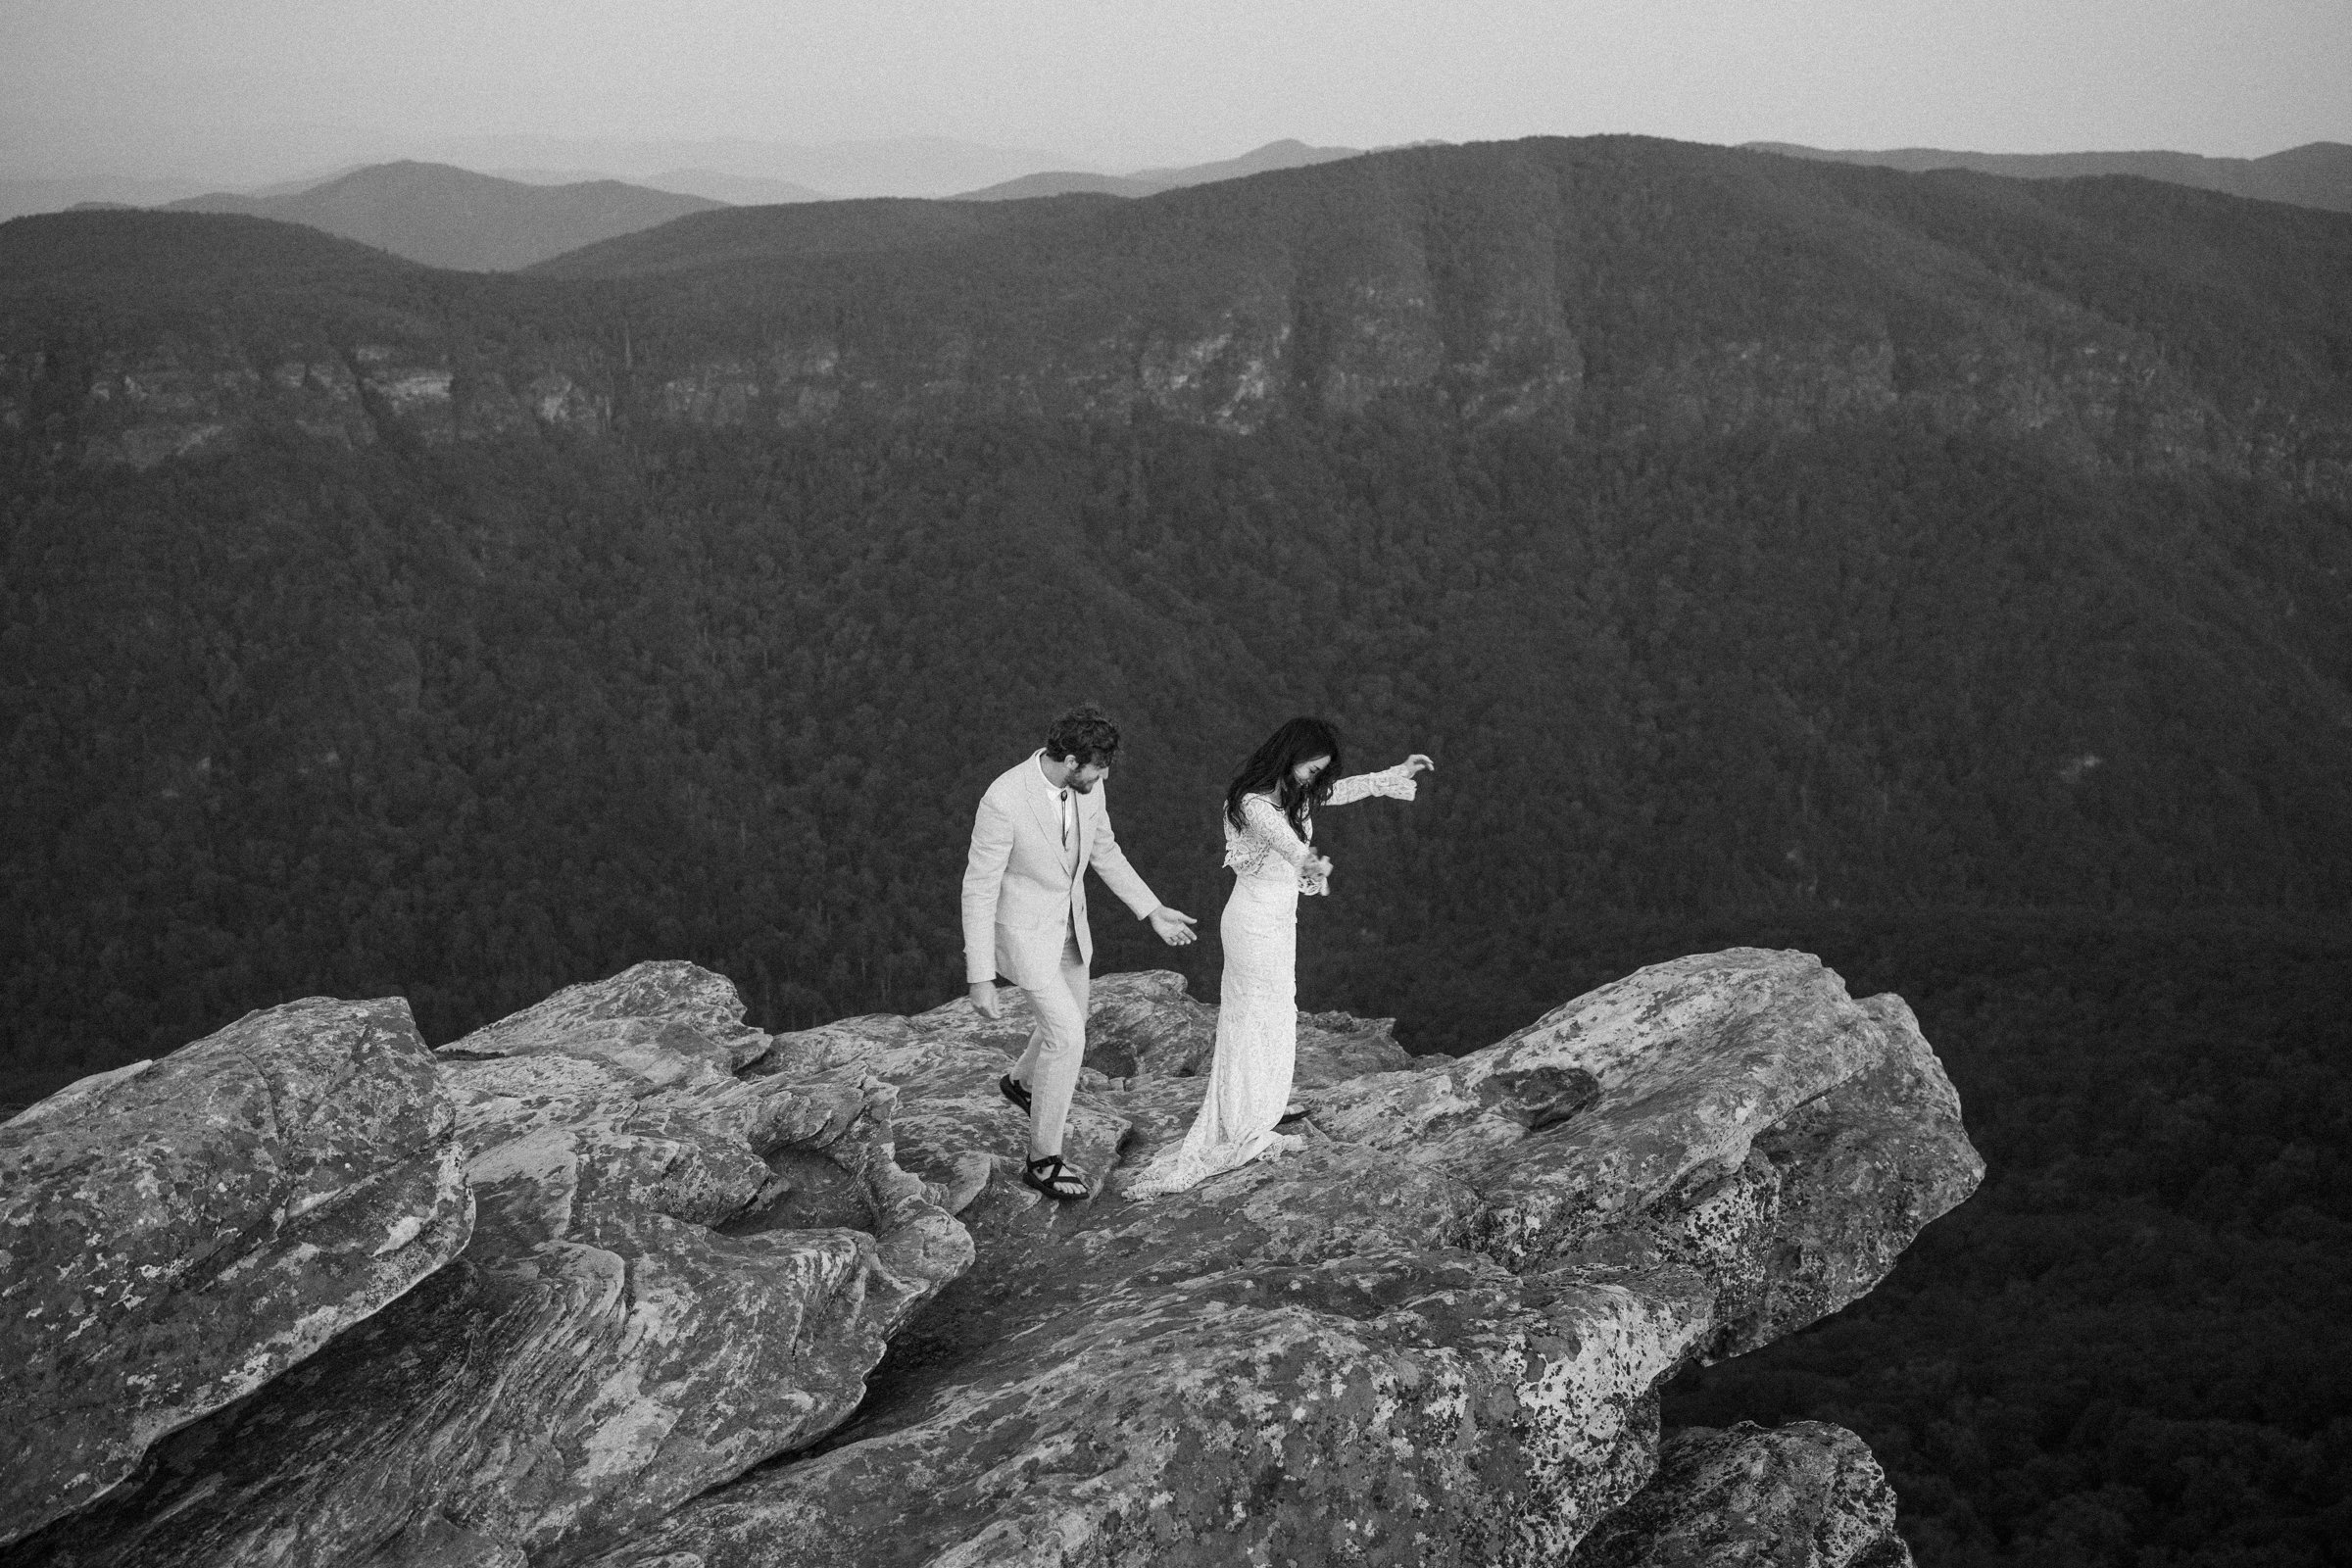 hawksbill-mountain-trail-elopement-asheville-elopement-photographer-8.jpg